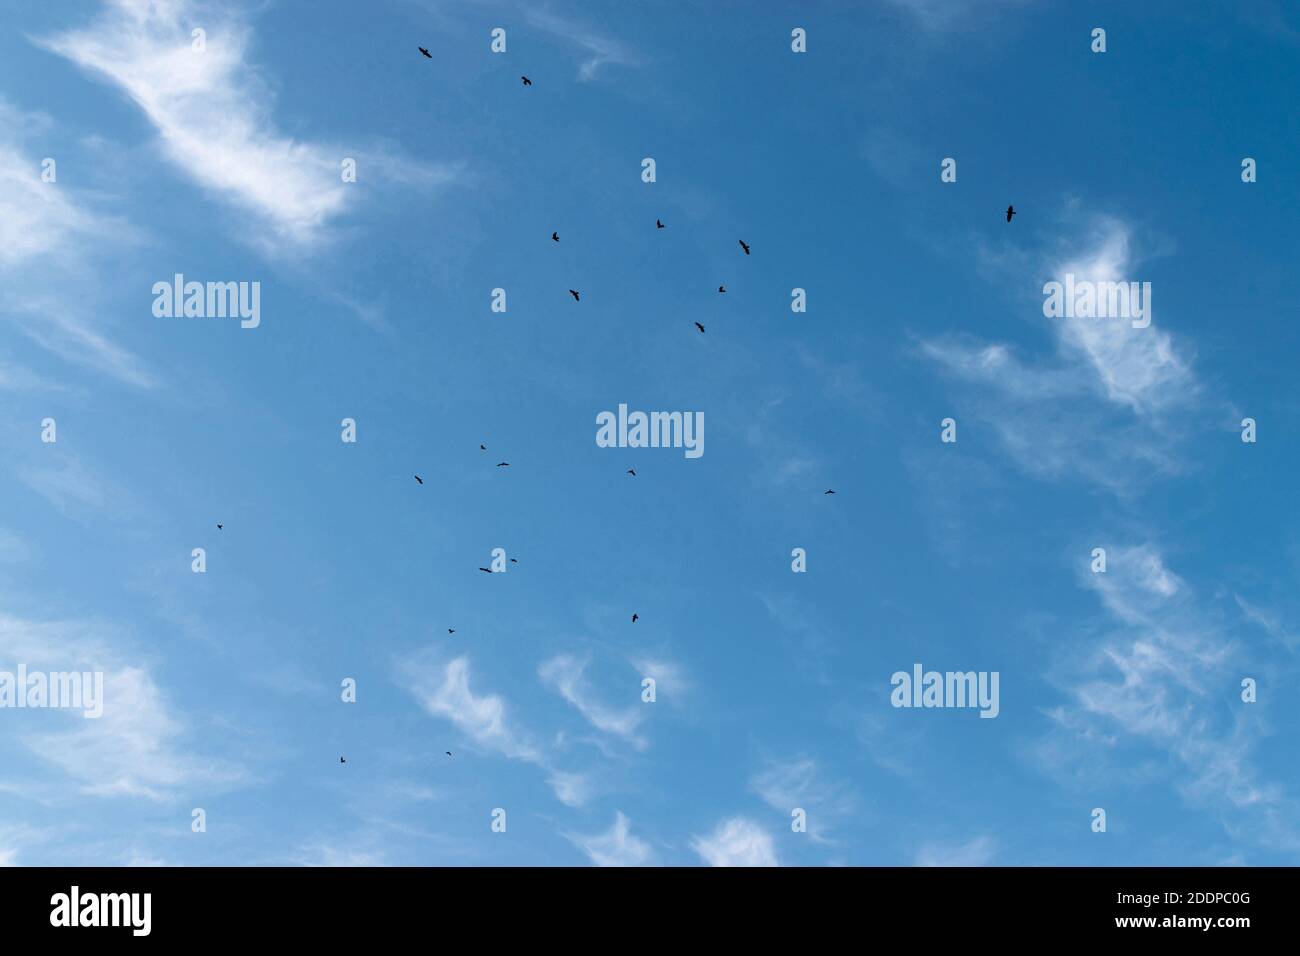 Schwarm schwarzer Vögel fliegt am blauen Himmel entgegen Ein Hintergrund von weißen Wolken Stockfoto